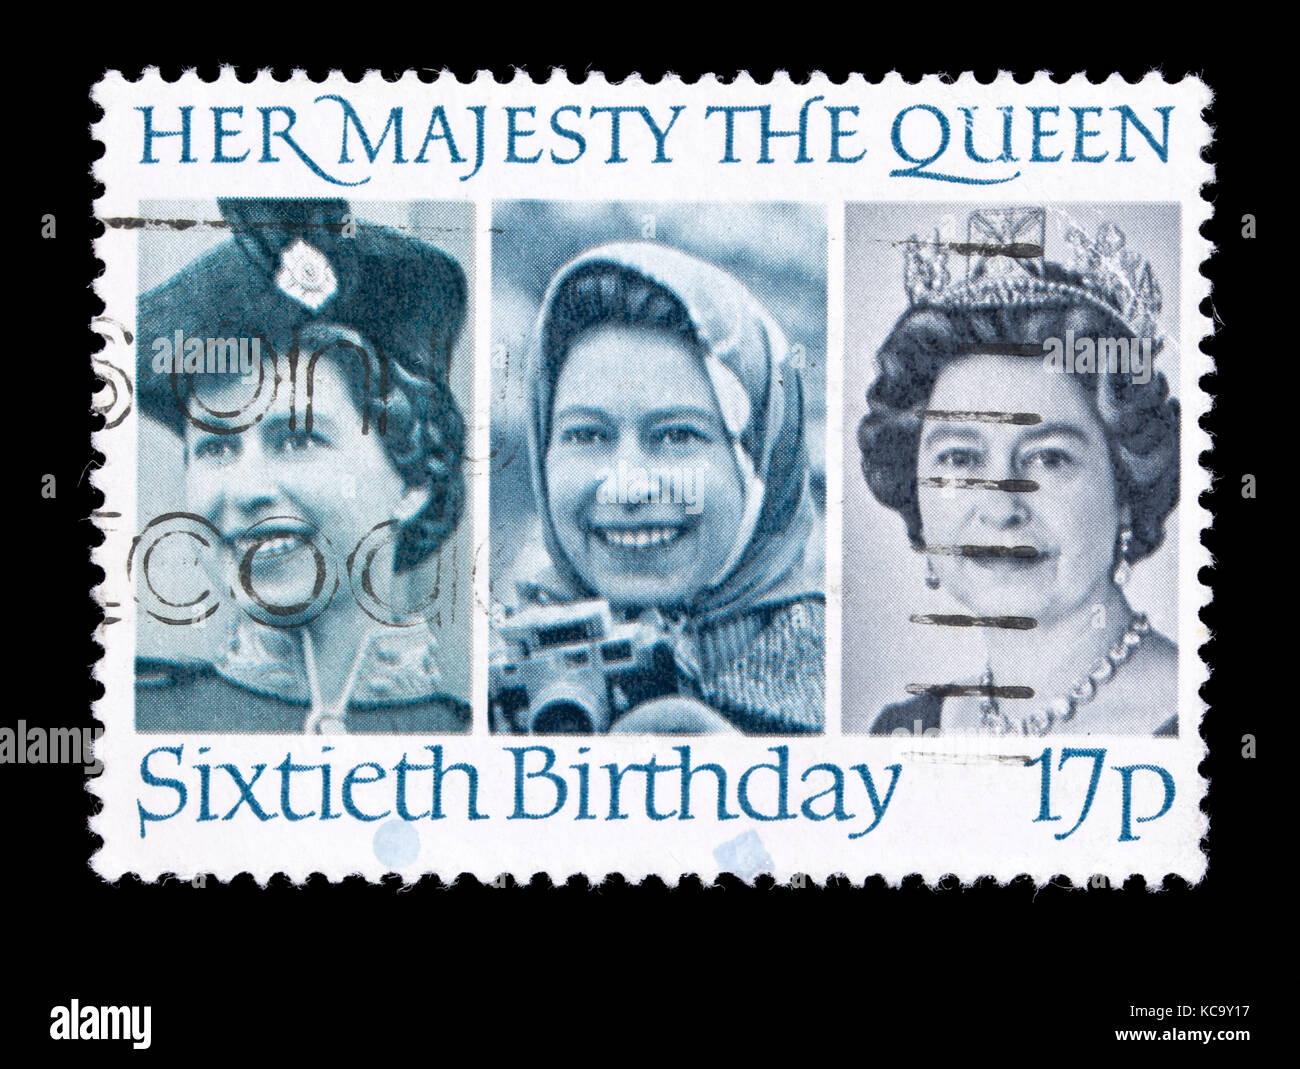 Timbre-poste à partir de la Grande-Bretagne représentant trois photos de la Reine Elizabeth, pour son soixantième anniversaire. Banque D'Images